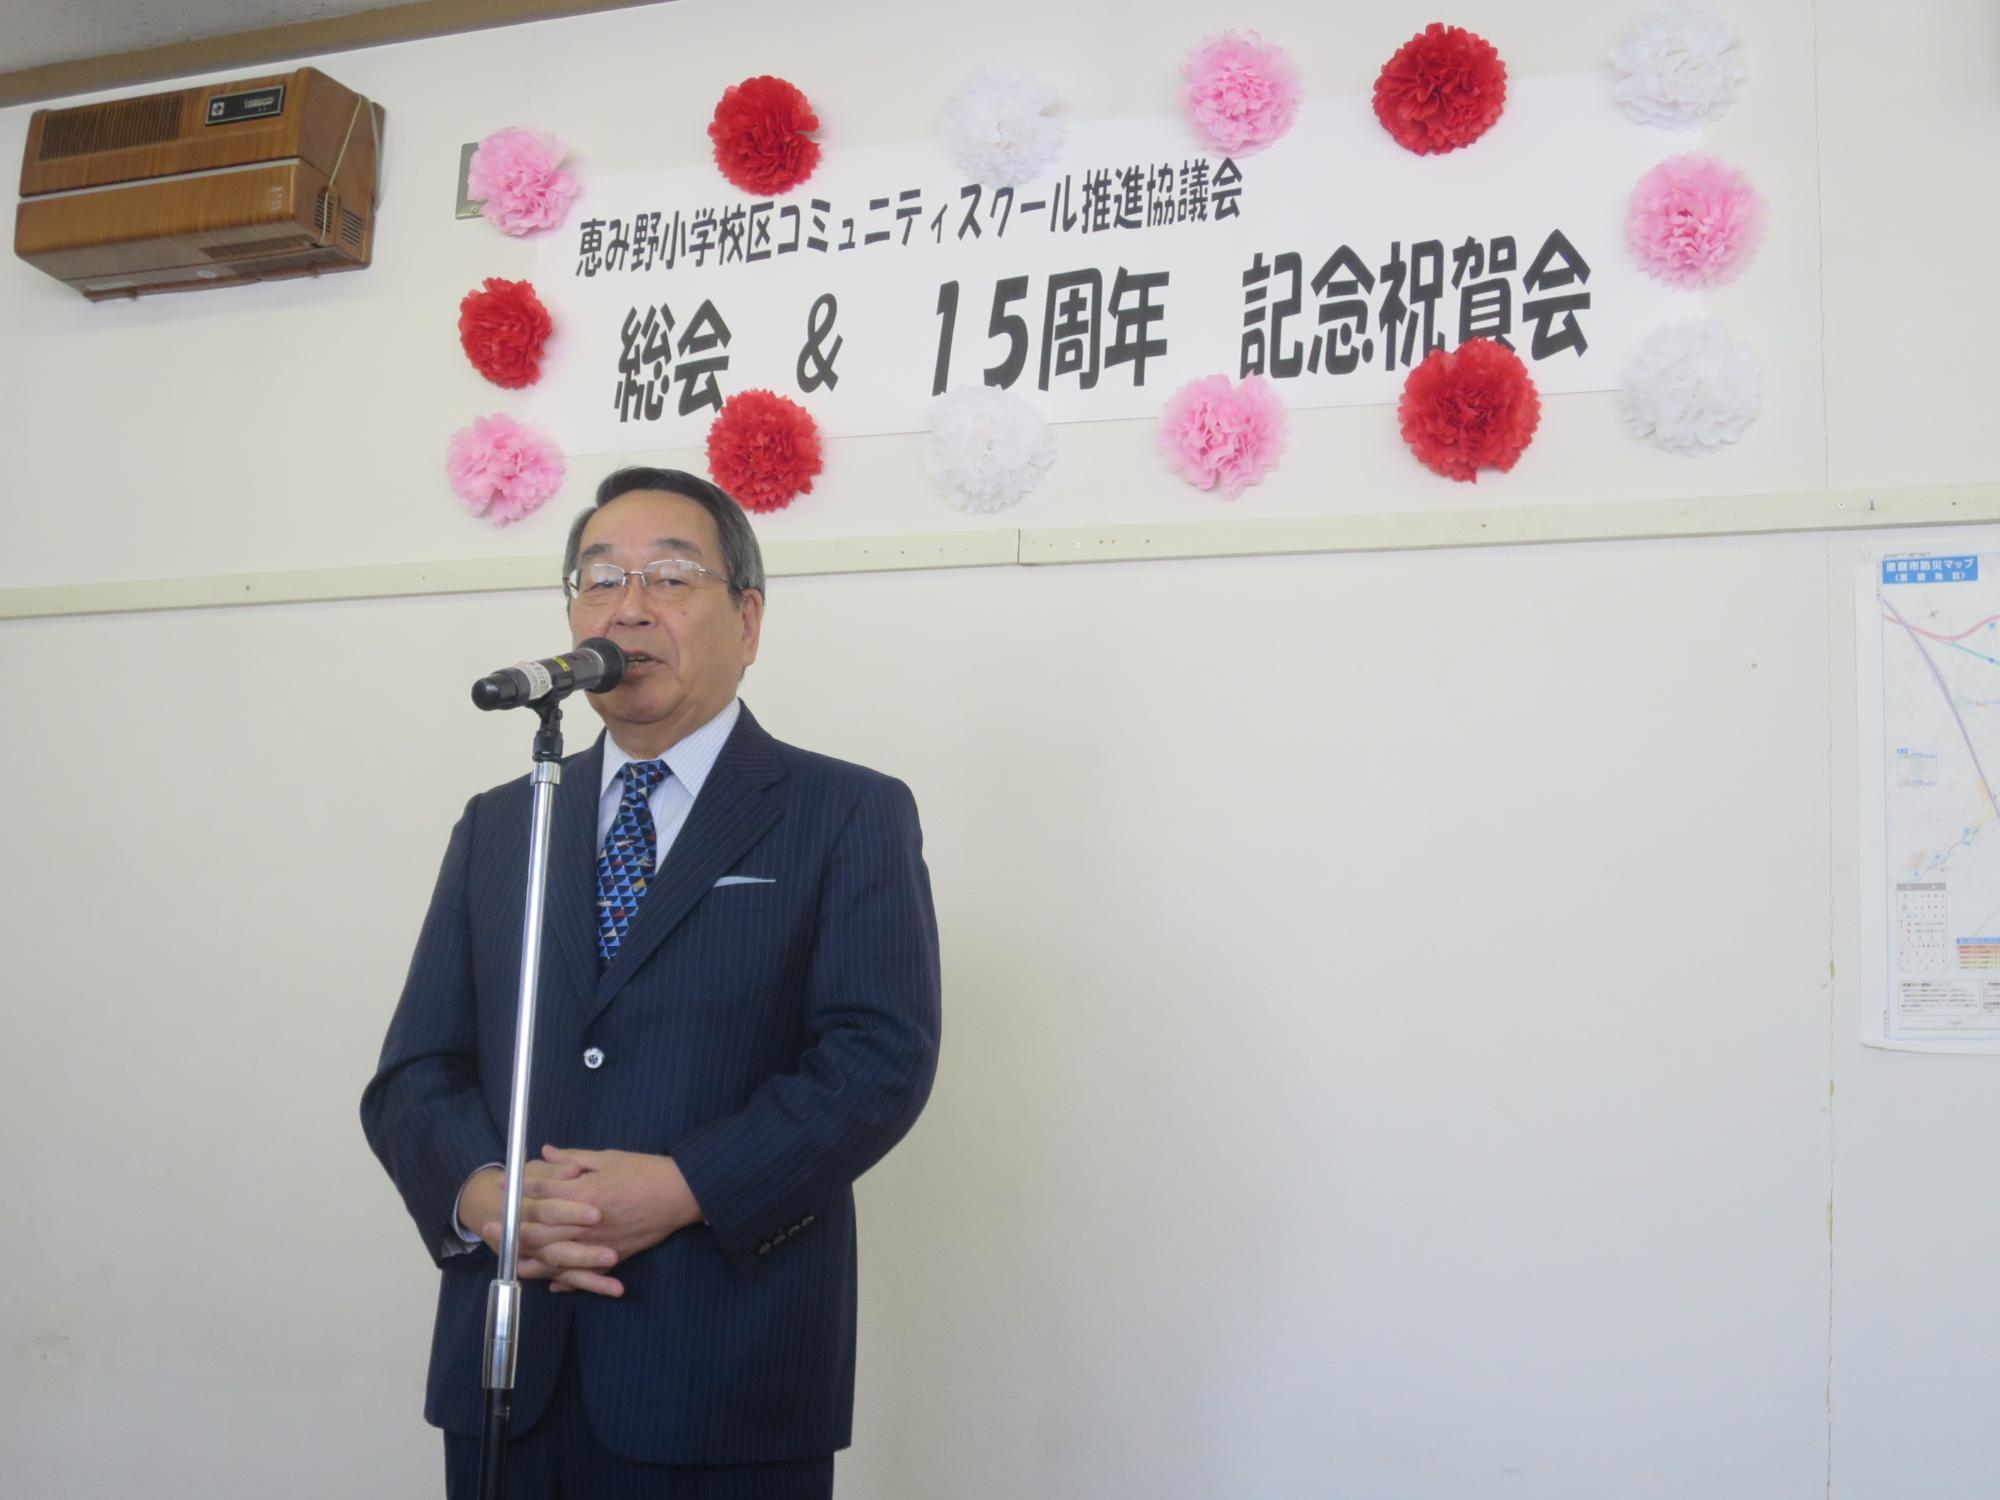 恵み野小学校区コミュニティスクール創立15周年記念祝賀会で挨拶をする原田市長